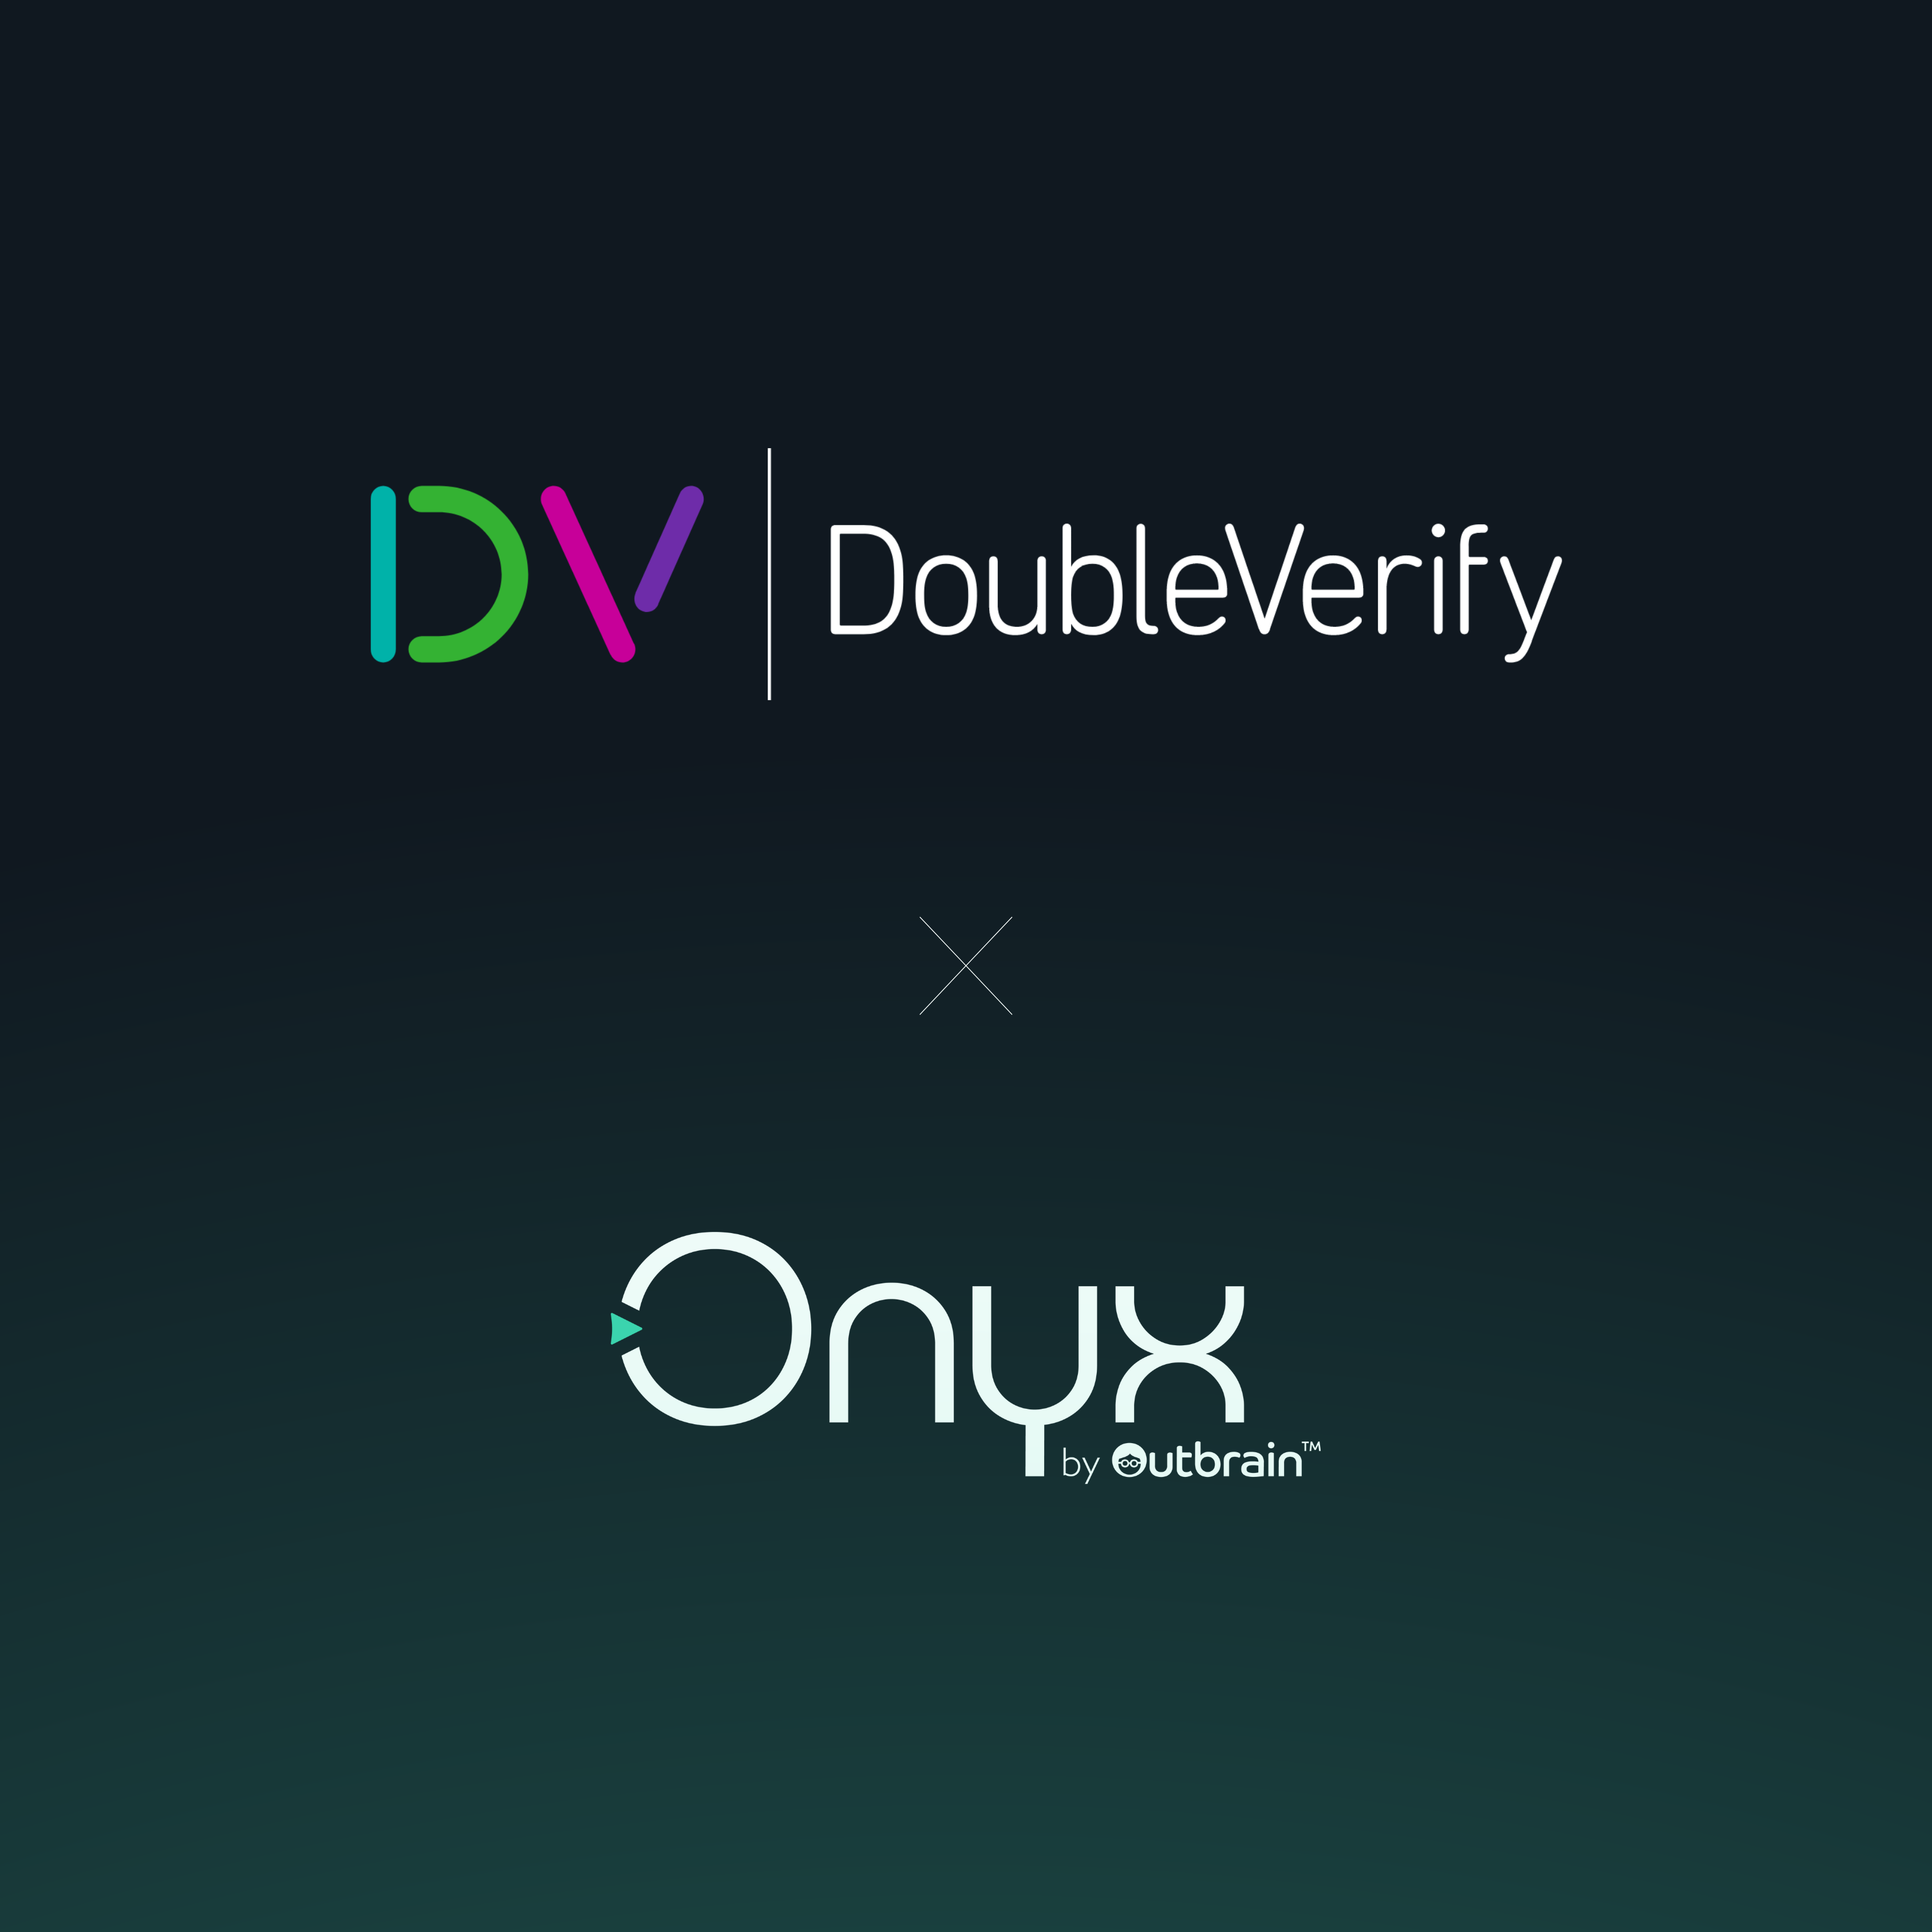 Outbrain integriert Technologien von DoubleVerify in seine neue Lösung für Brand Marketer